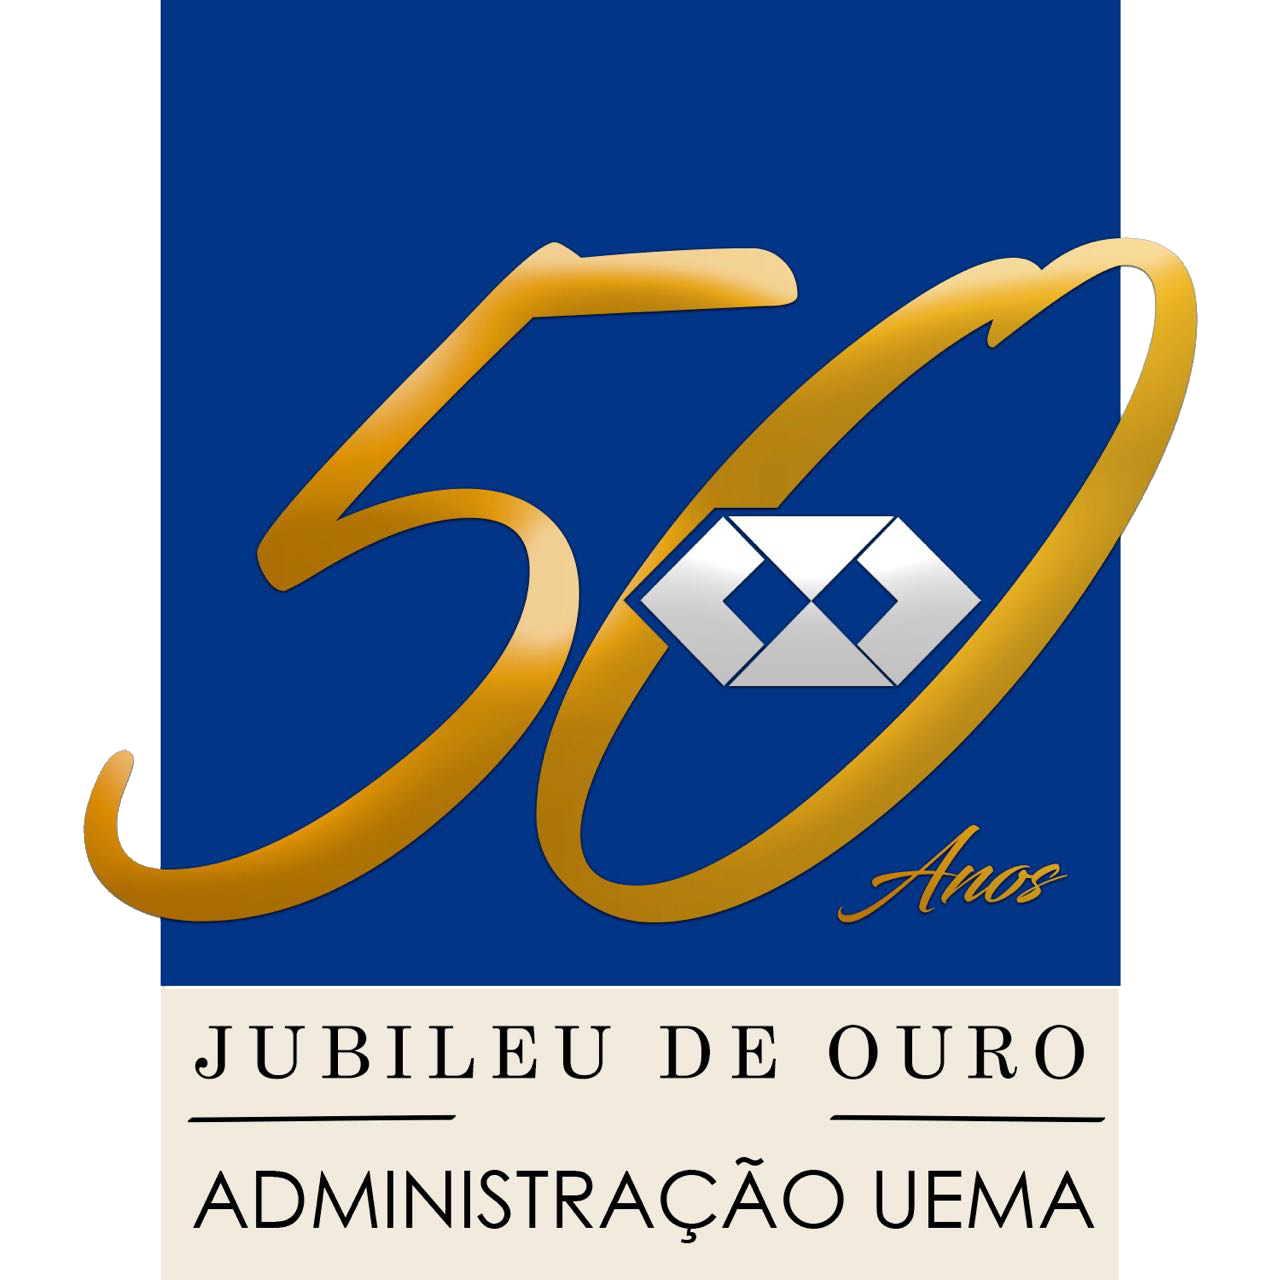 Jubileu de Ouro do Curso de Administração da UEMA será realizado nesta quinta-feira